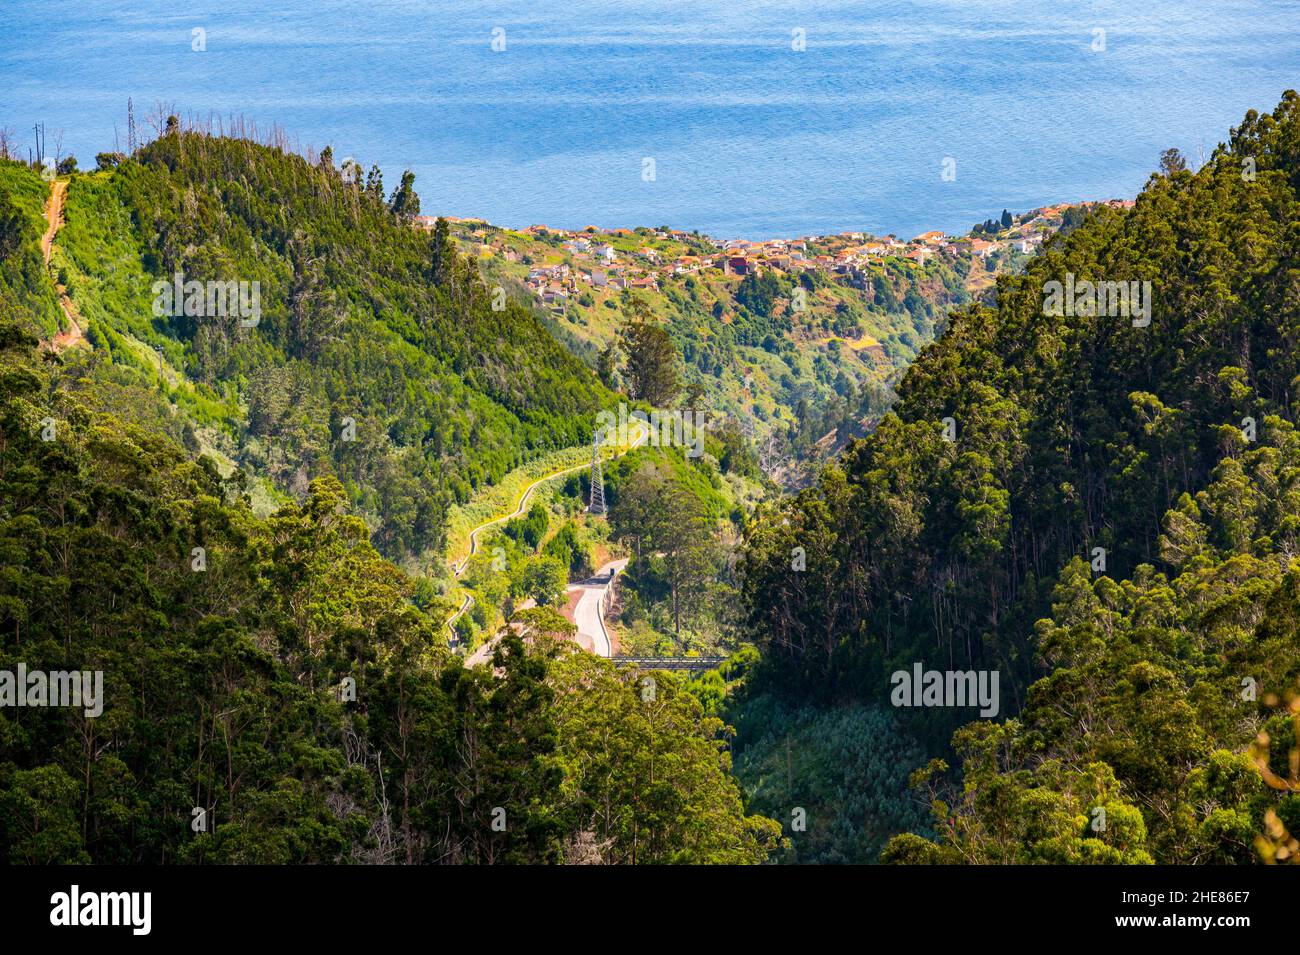 Spettacolare vista panoramica di Funchal, capitale di Madeira dalla cima della montagna. Foto Stock